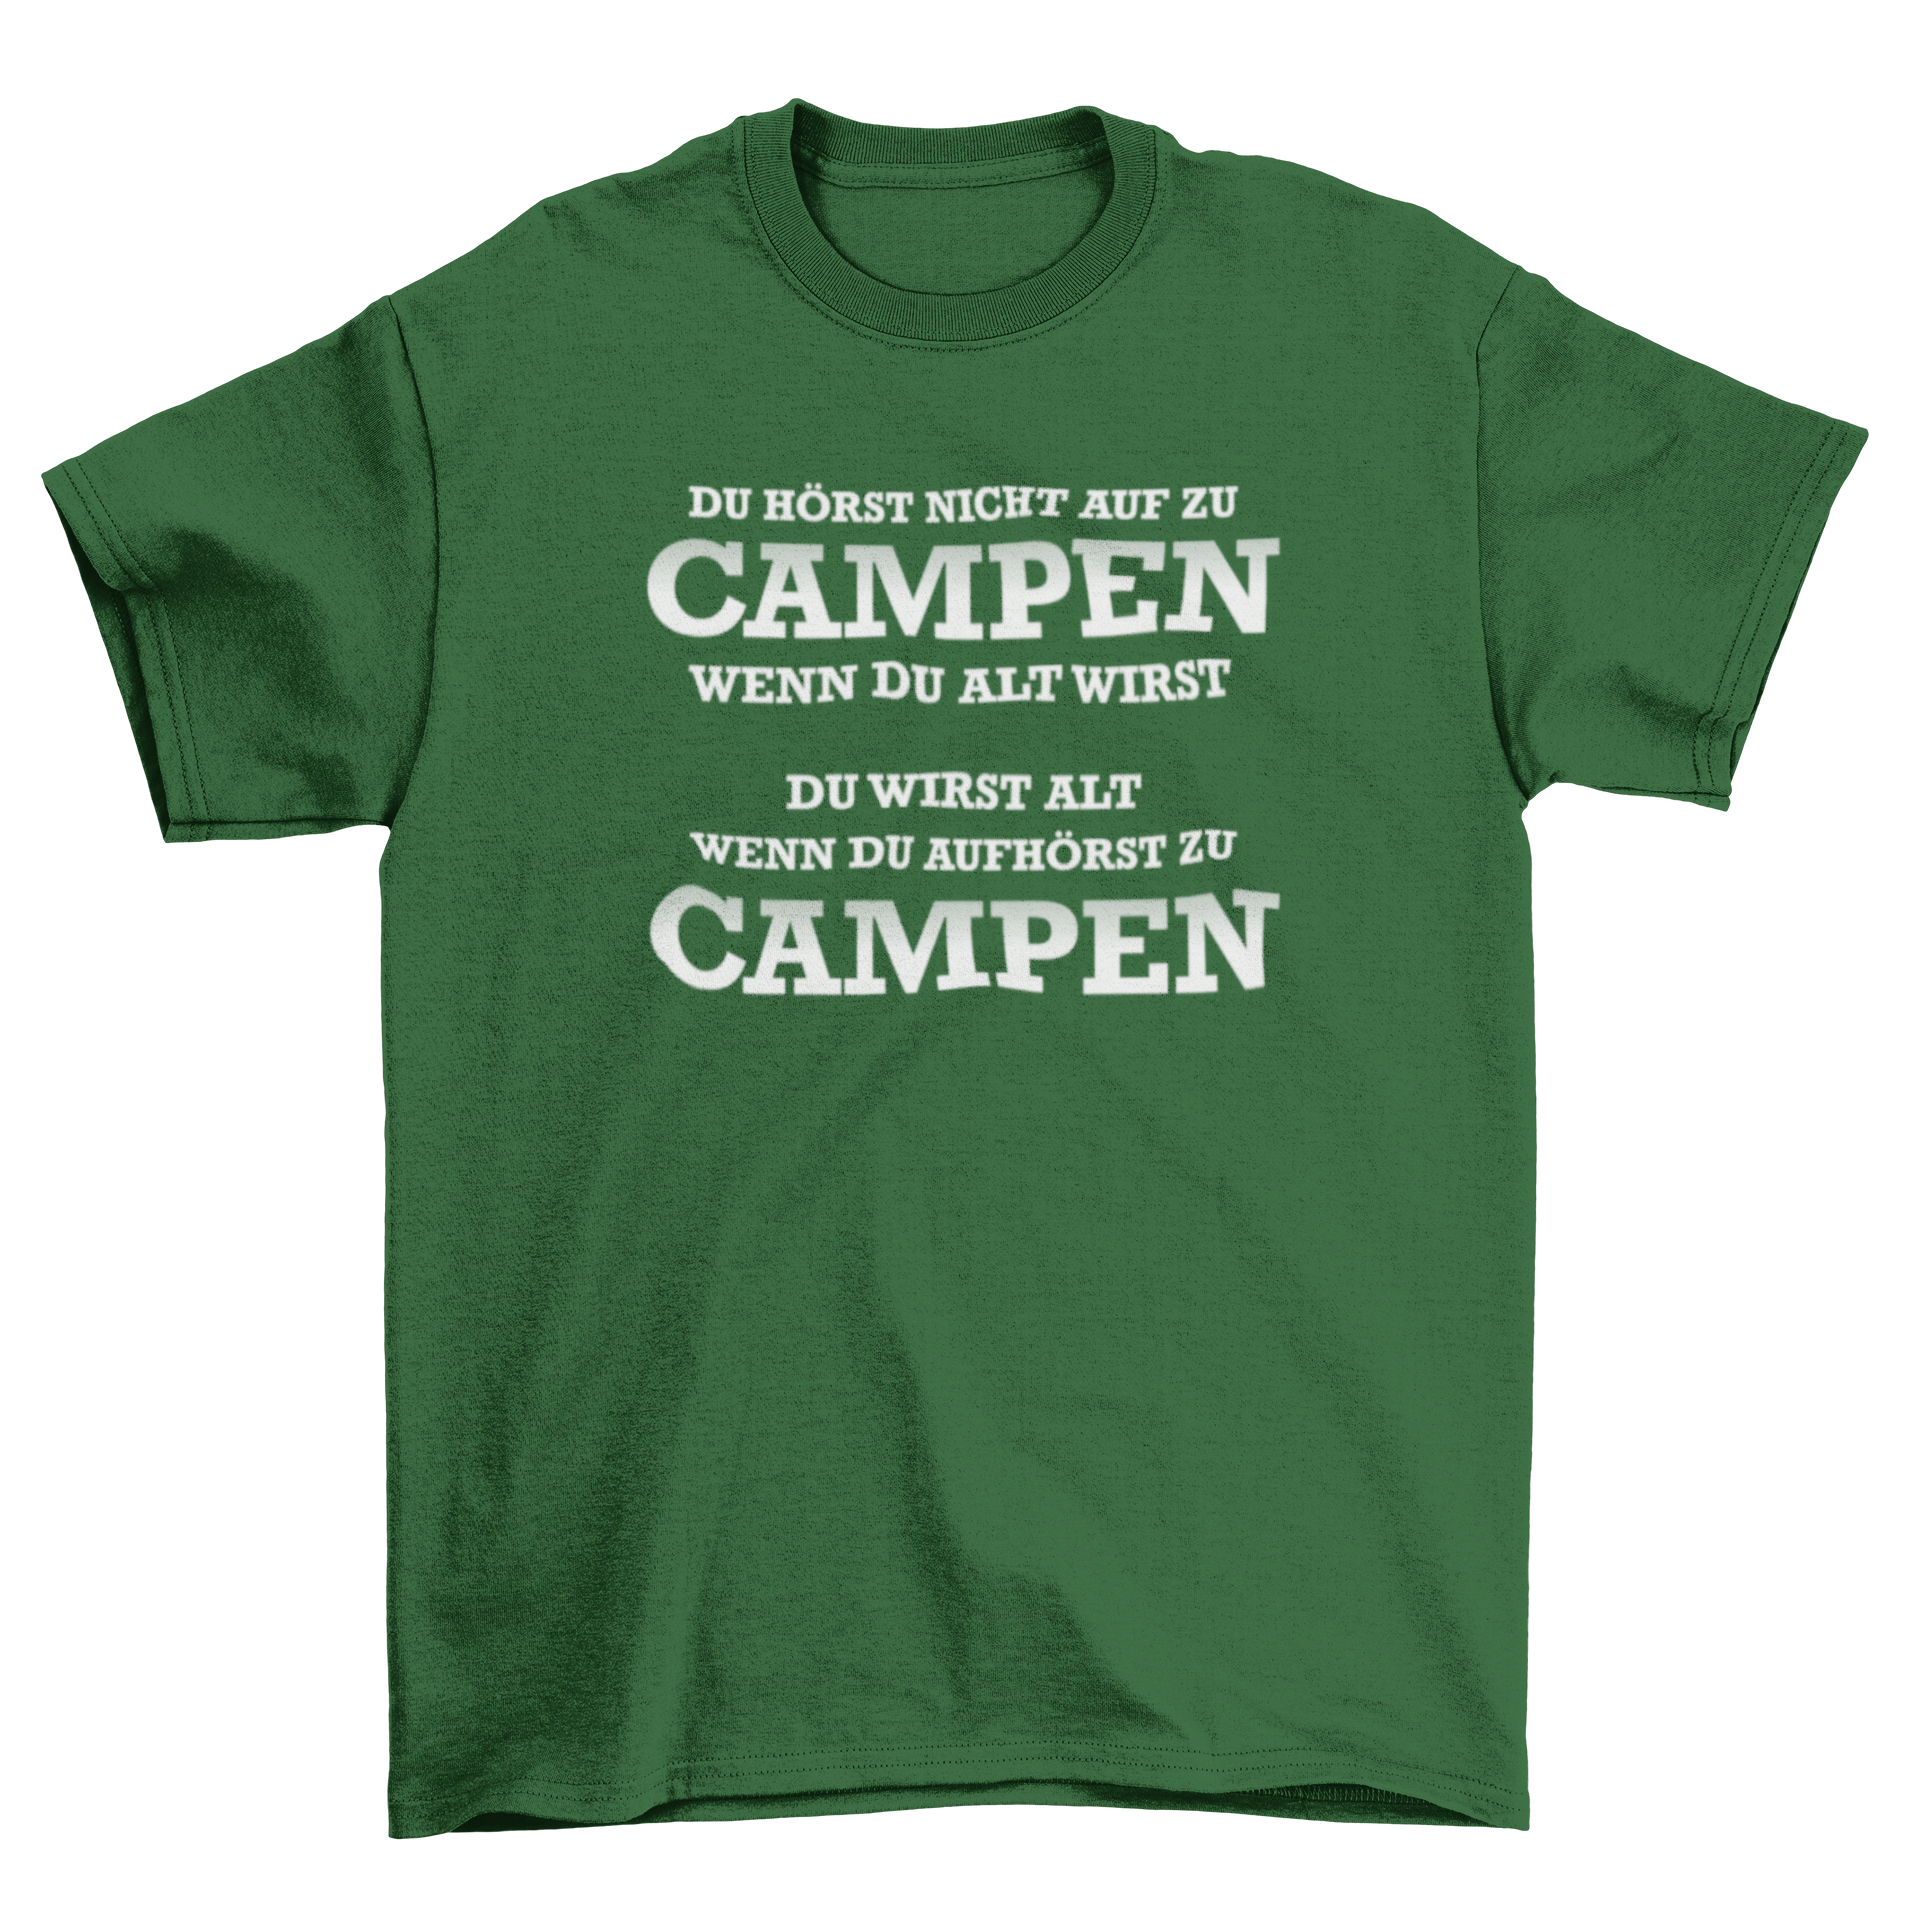 Du wirst alt wenn du aufhörst zu campen  - T-Shirt